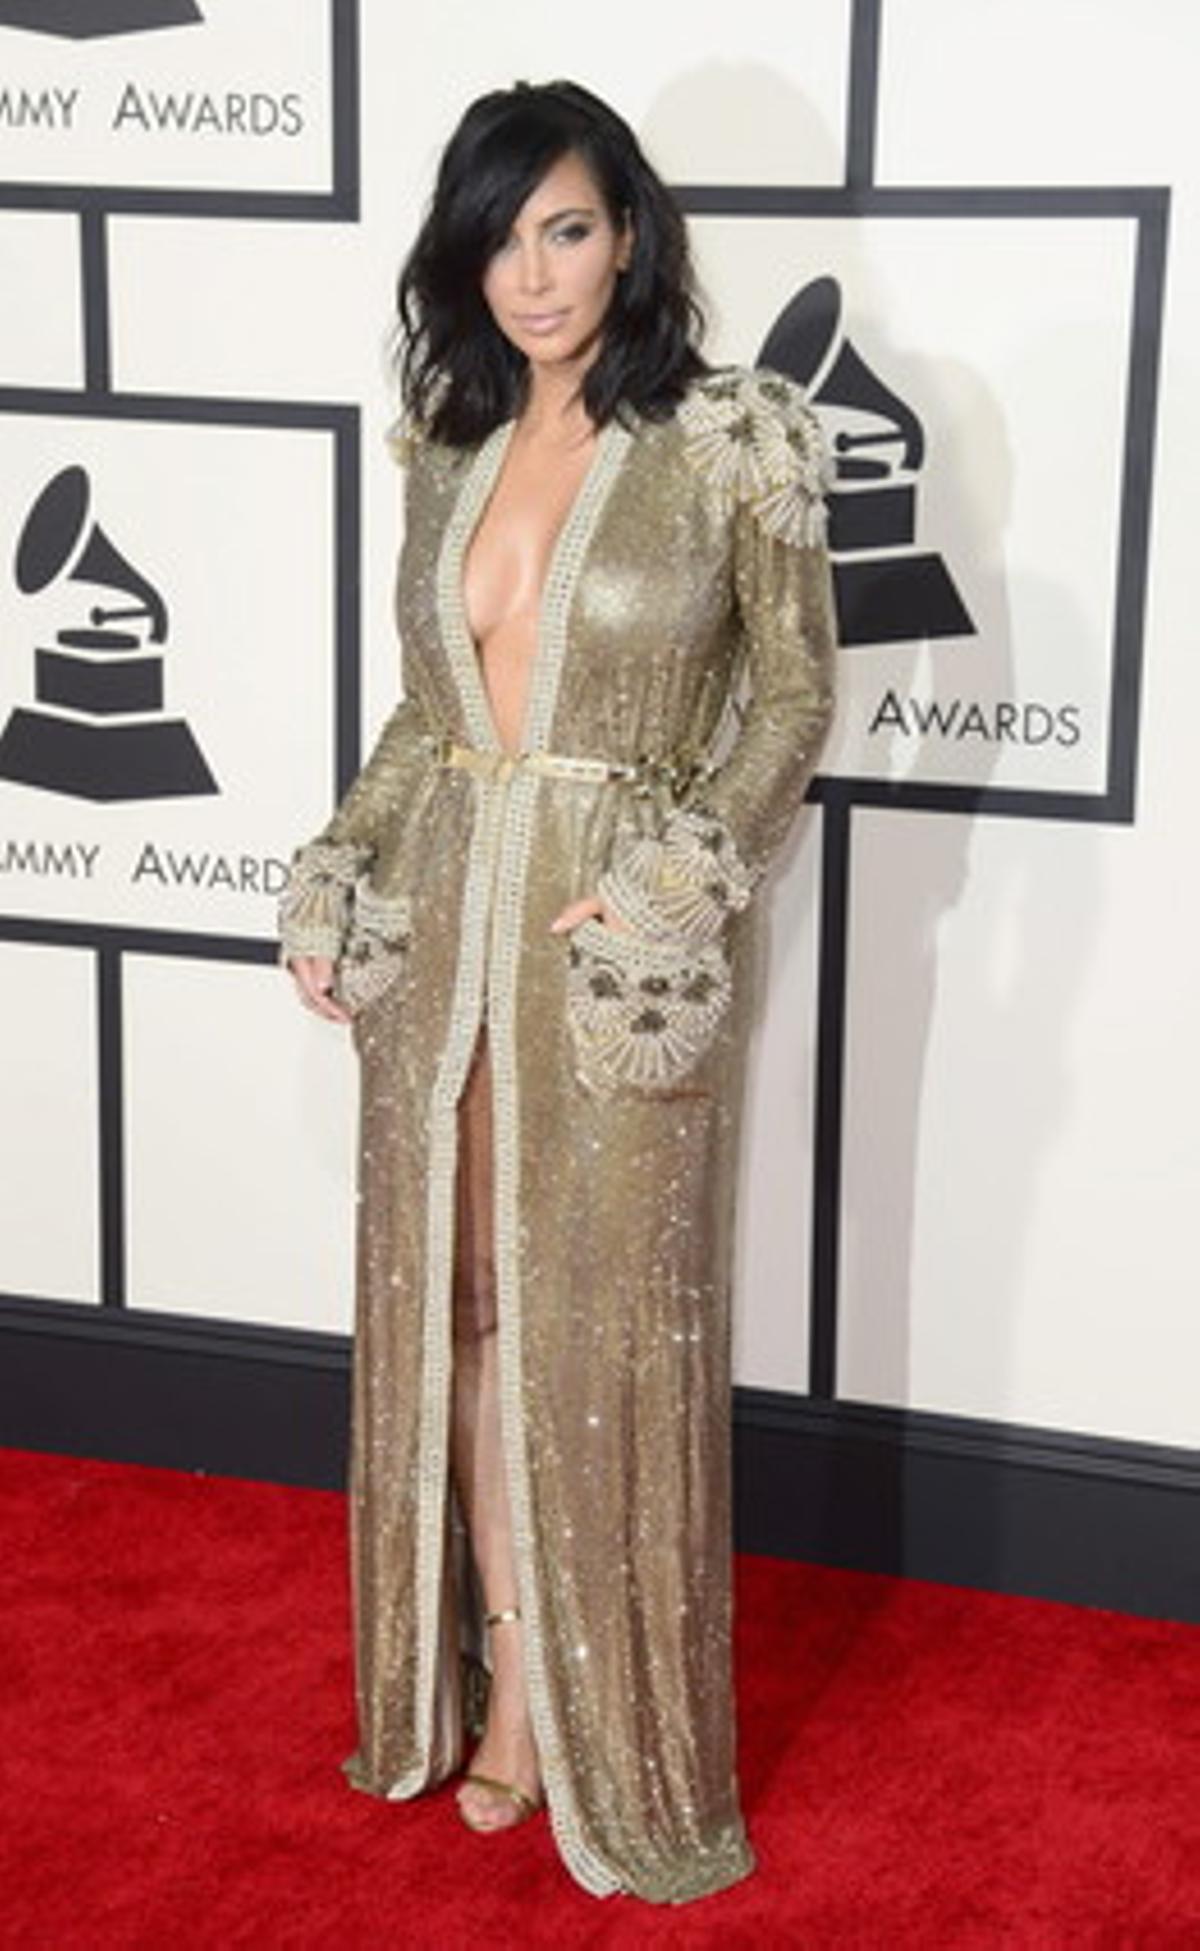 Kim Kardashian, luciendo escote y muslo, eligió un modelo dorado con casi total obertura frontal. Fiel a su estilo.